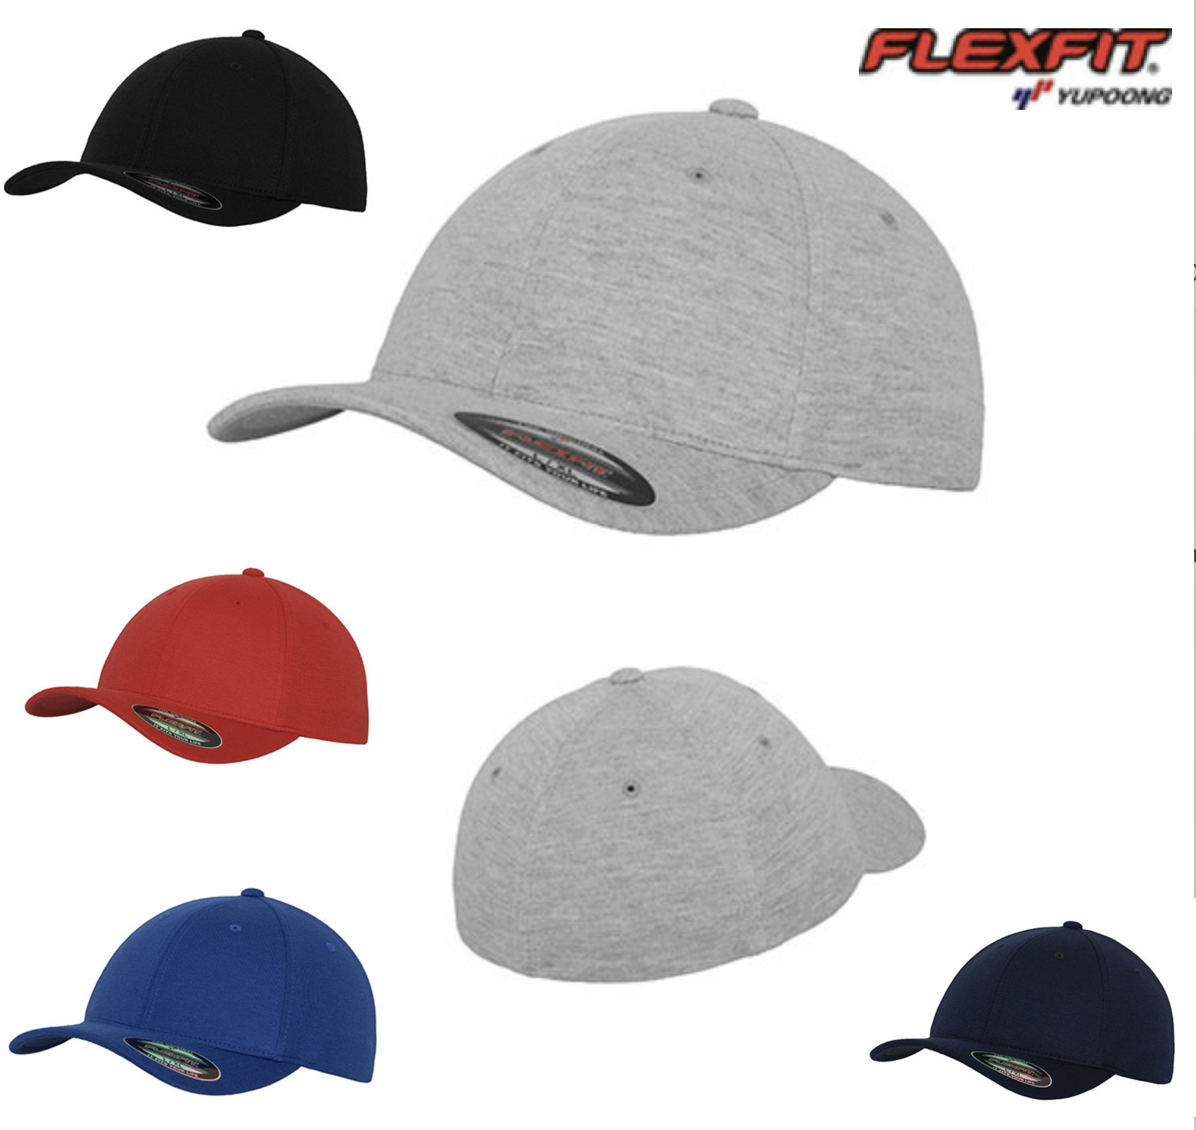 Flexfit Double Jersey Cap